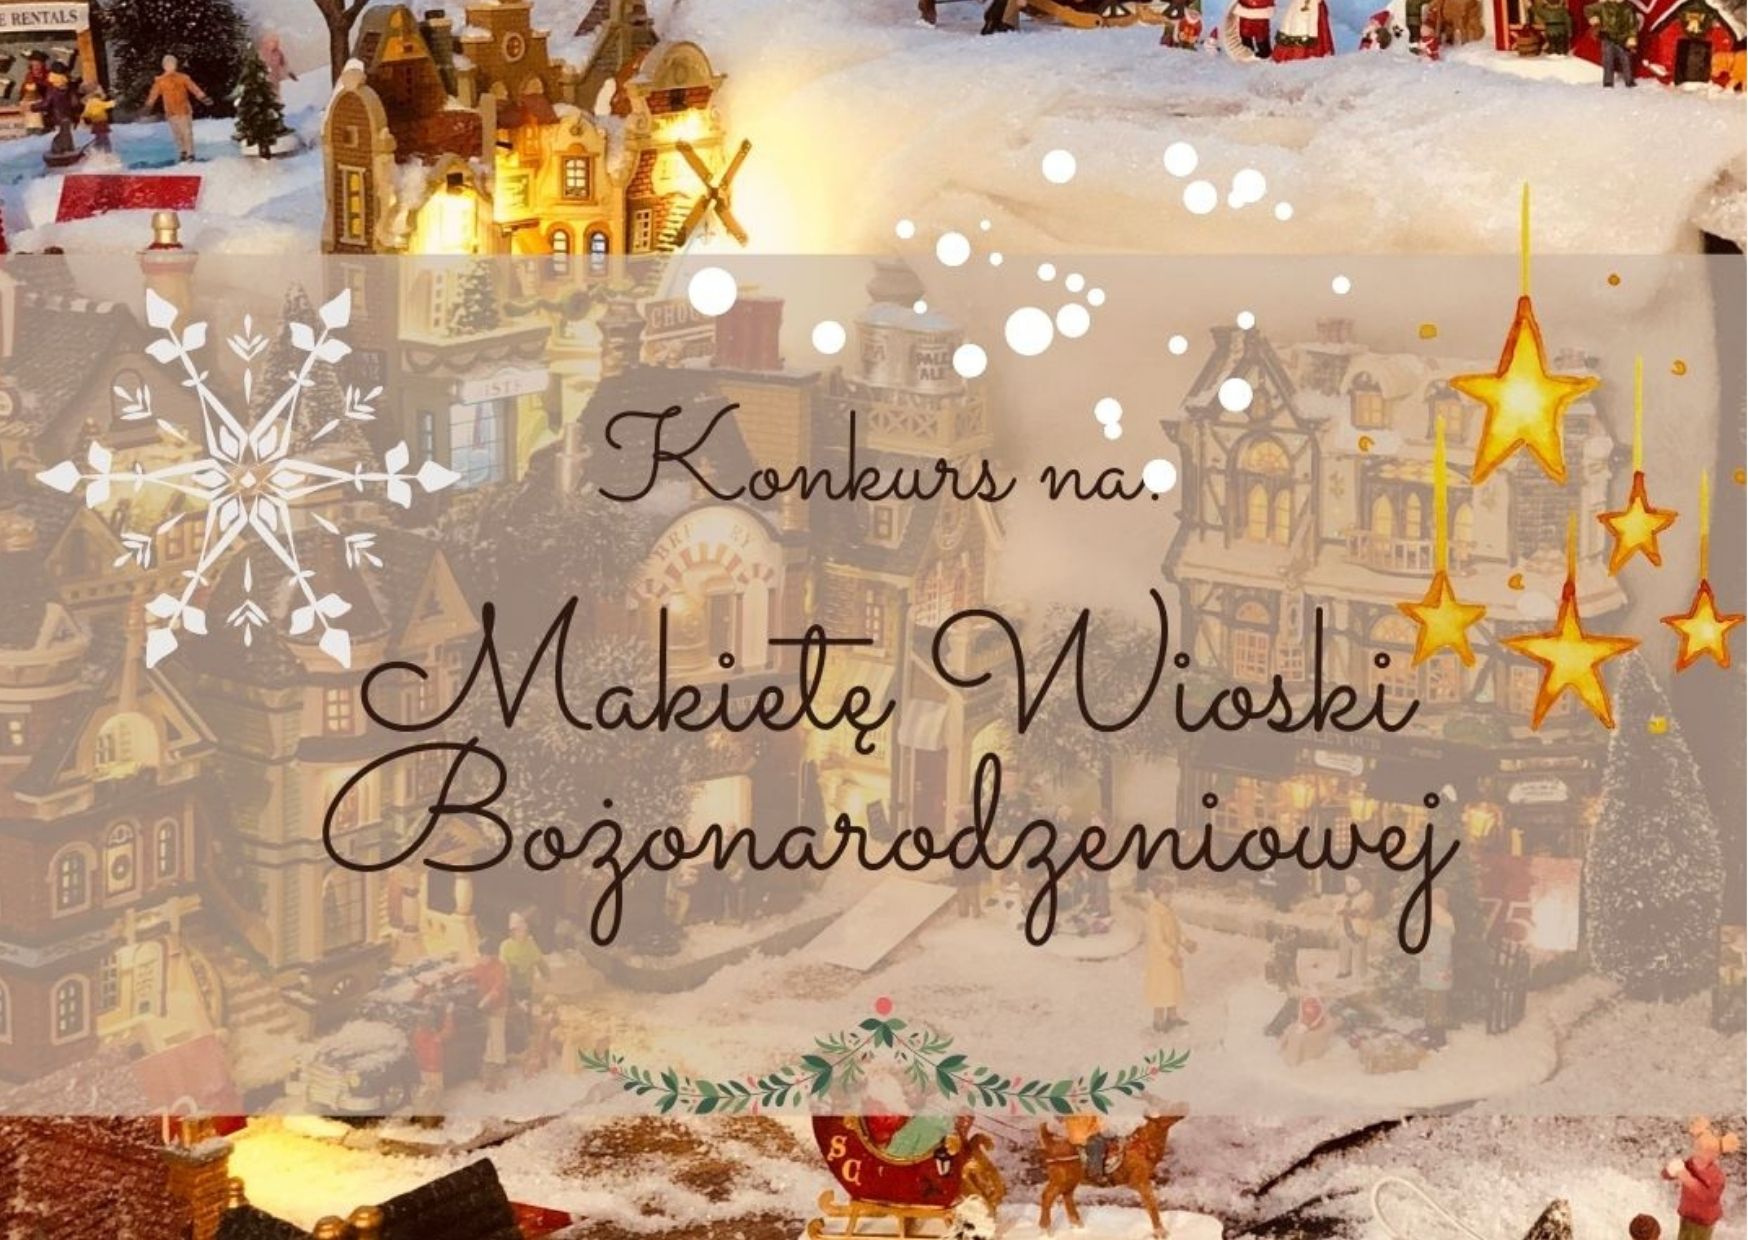 Grafika poglądowa do treści; tematyka bozonarodzeniowa, domki, lamki, śnieżynki, choinki, w centralnym punkcie napis: konkurs na makietę wioski bożonarodzeniowej